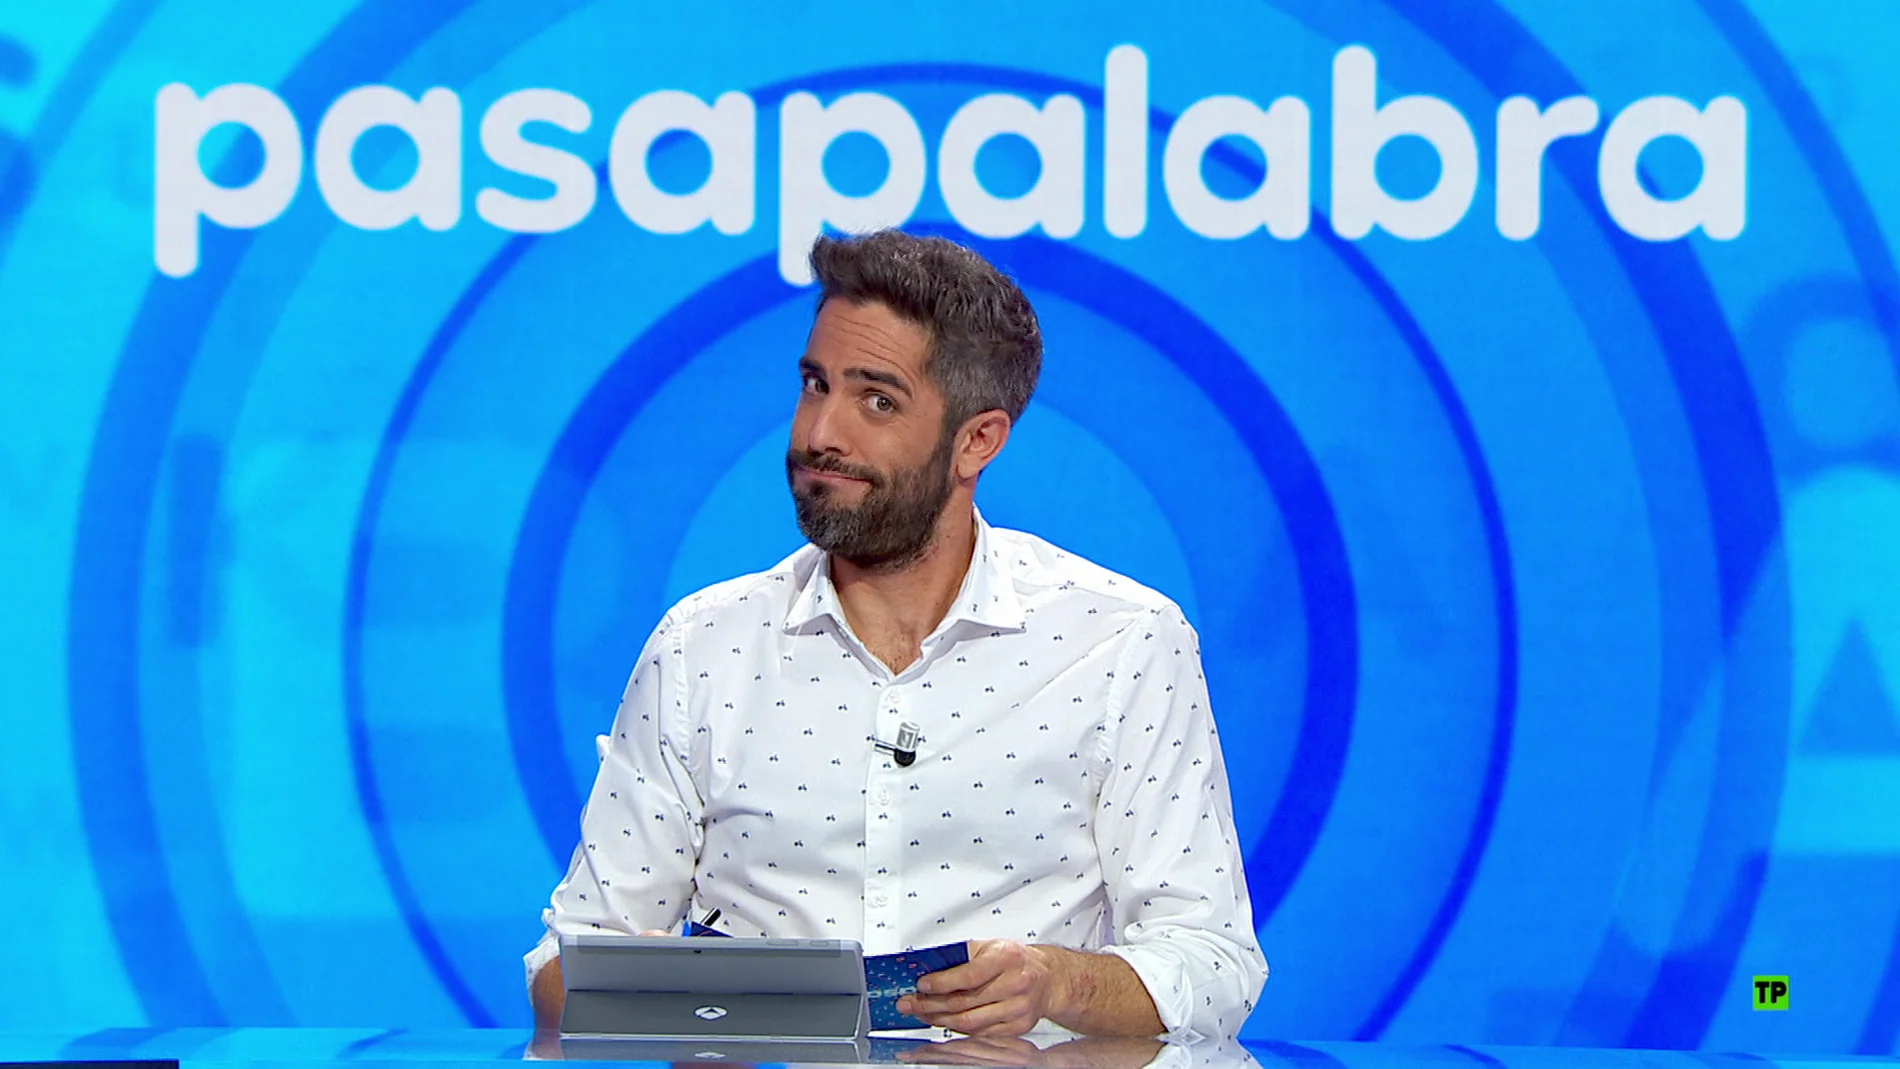 Más de 30 programas, un bote increíble y un emocionante duelo entre Pablo y Nacho en 'Pasapalabra’, de lunes a viernes en Antena 3